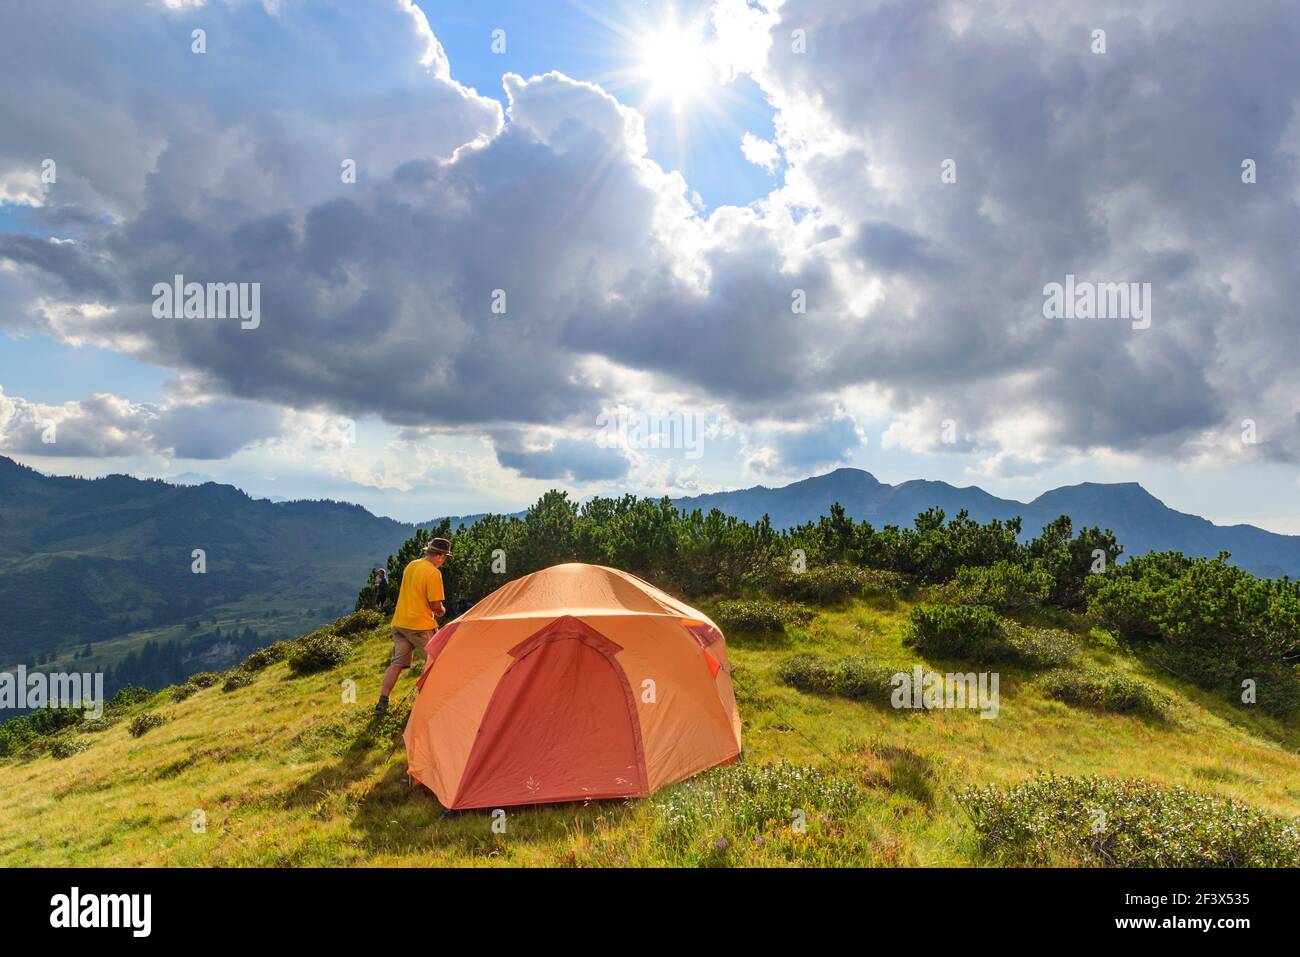 La configuration de la tente pour une nuitée dans les montagnes Banque D'Images